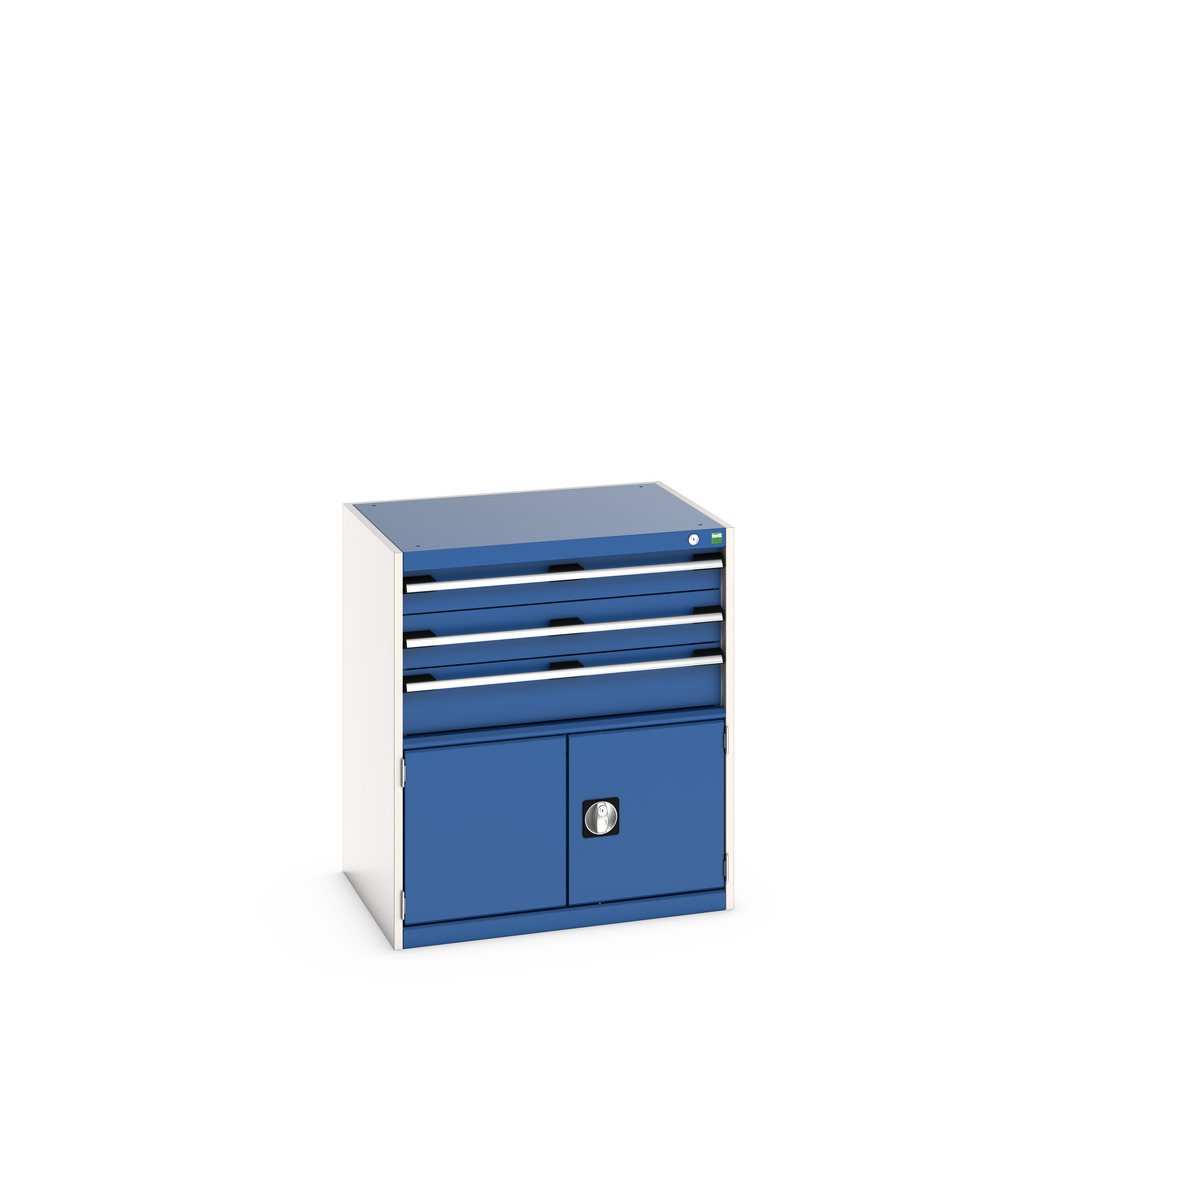 40020034.11V - cubio drawer-door cabinet